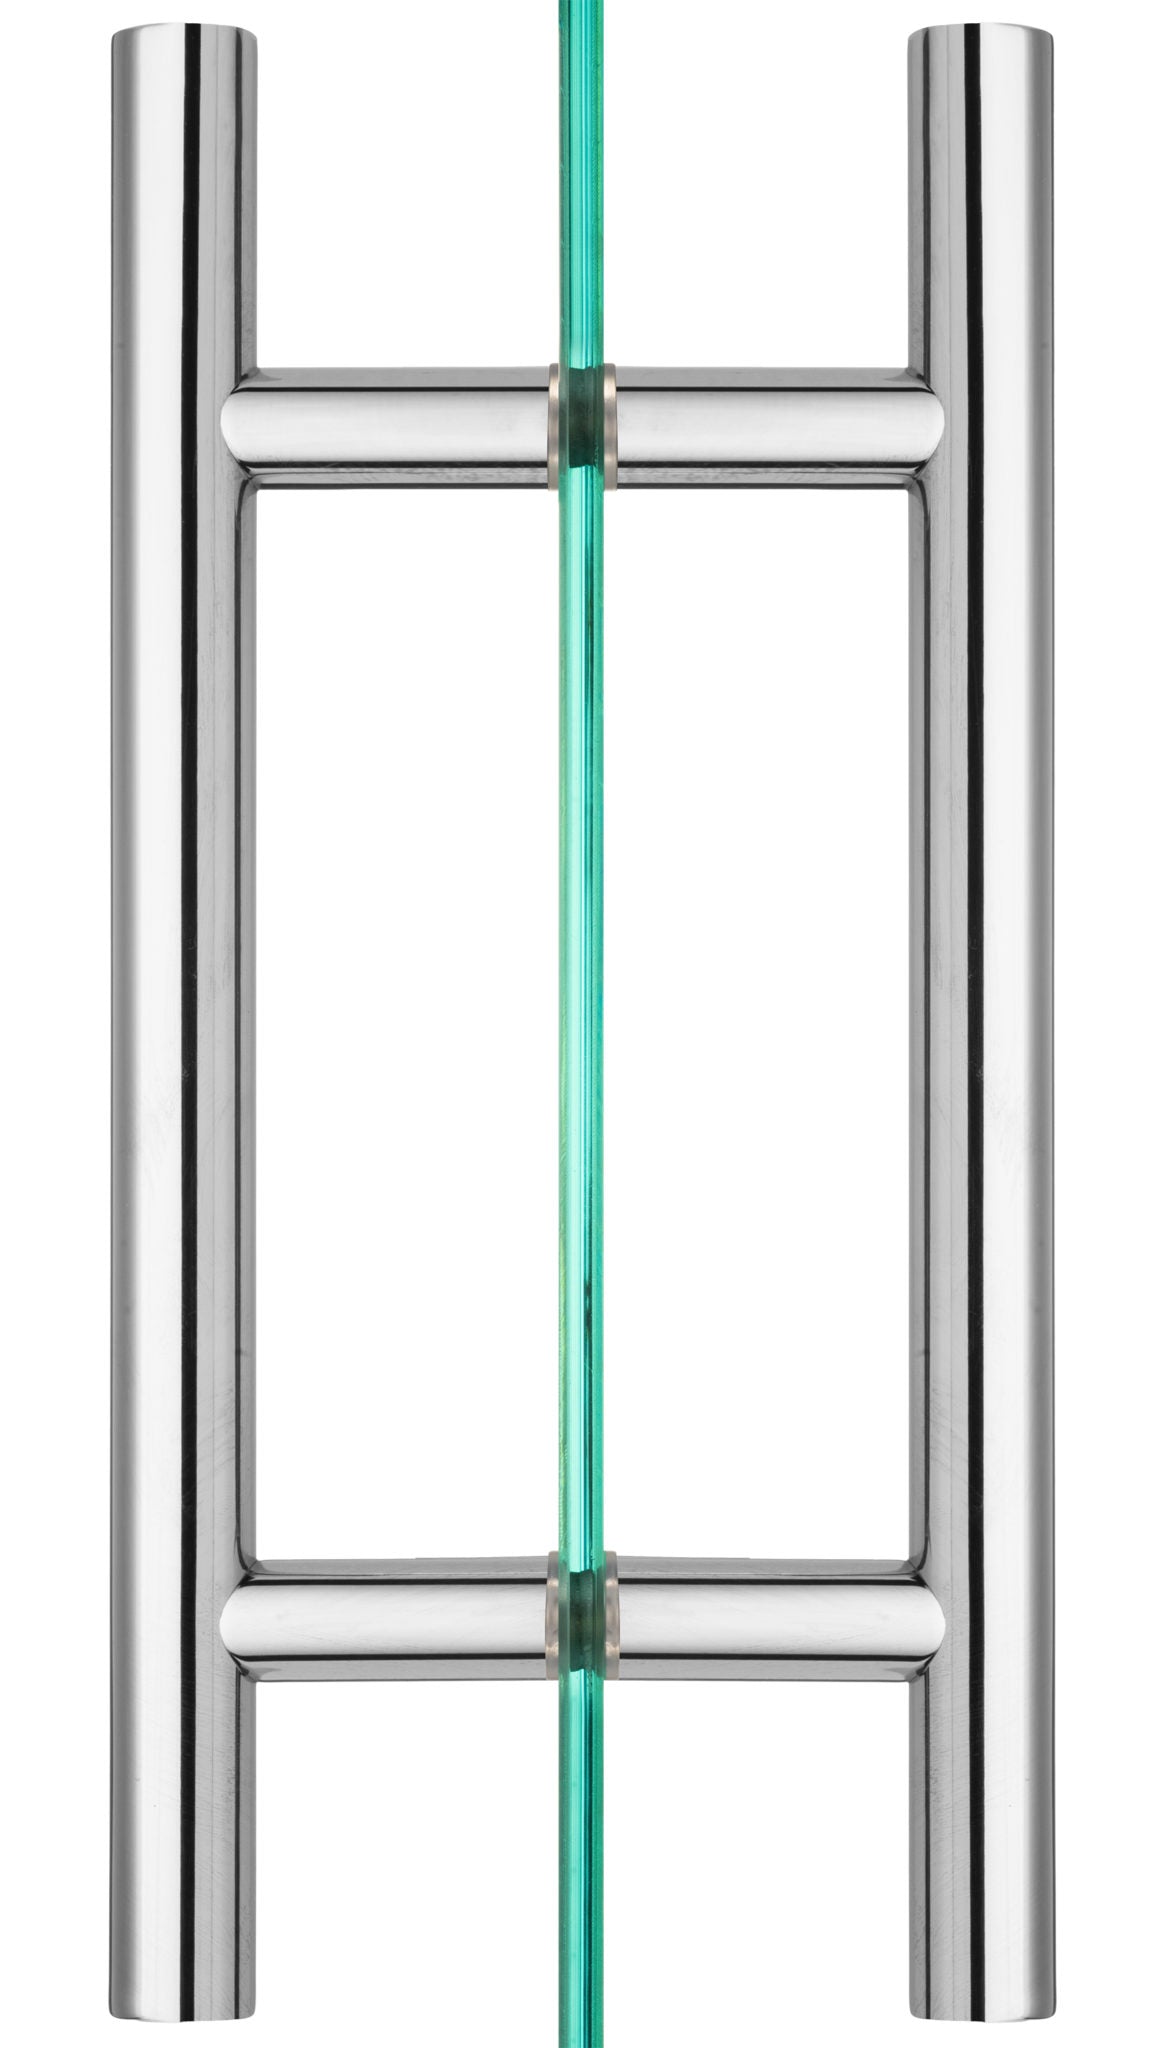 Rockwell Back to Back Ladder Pull for Heavy Glass Frameless Shower Doors